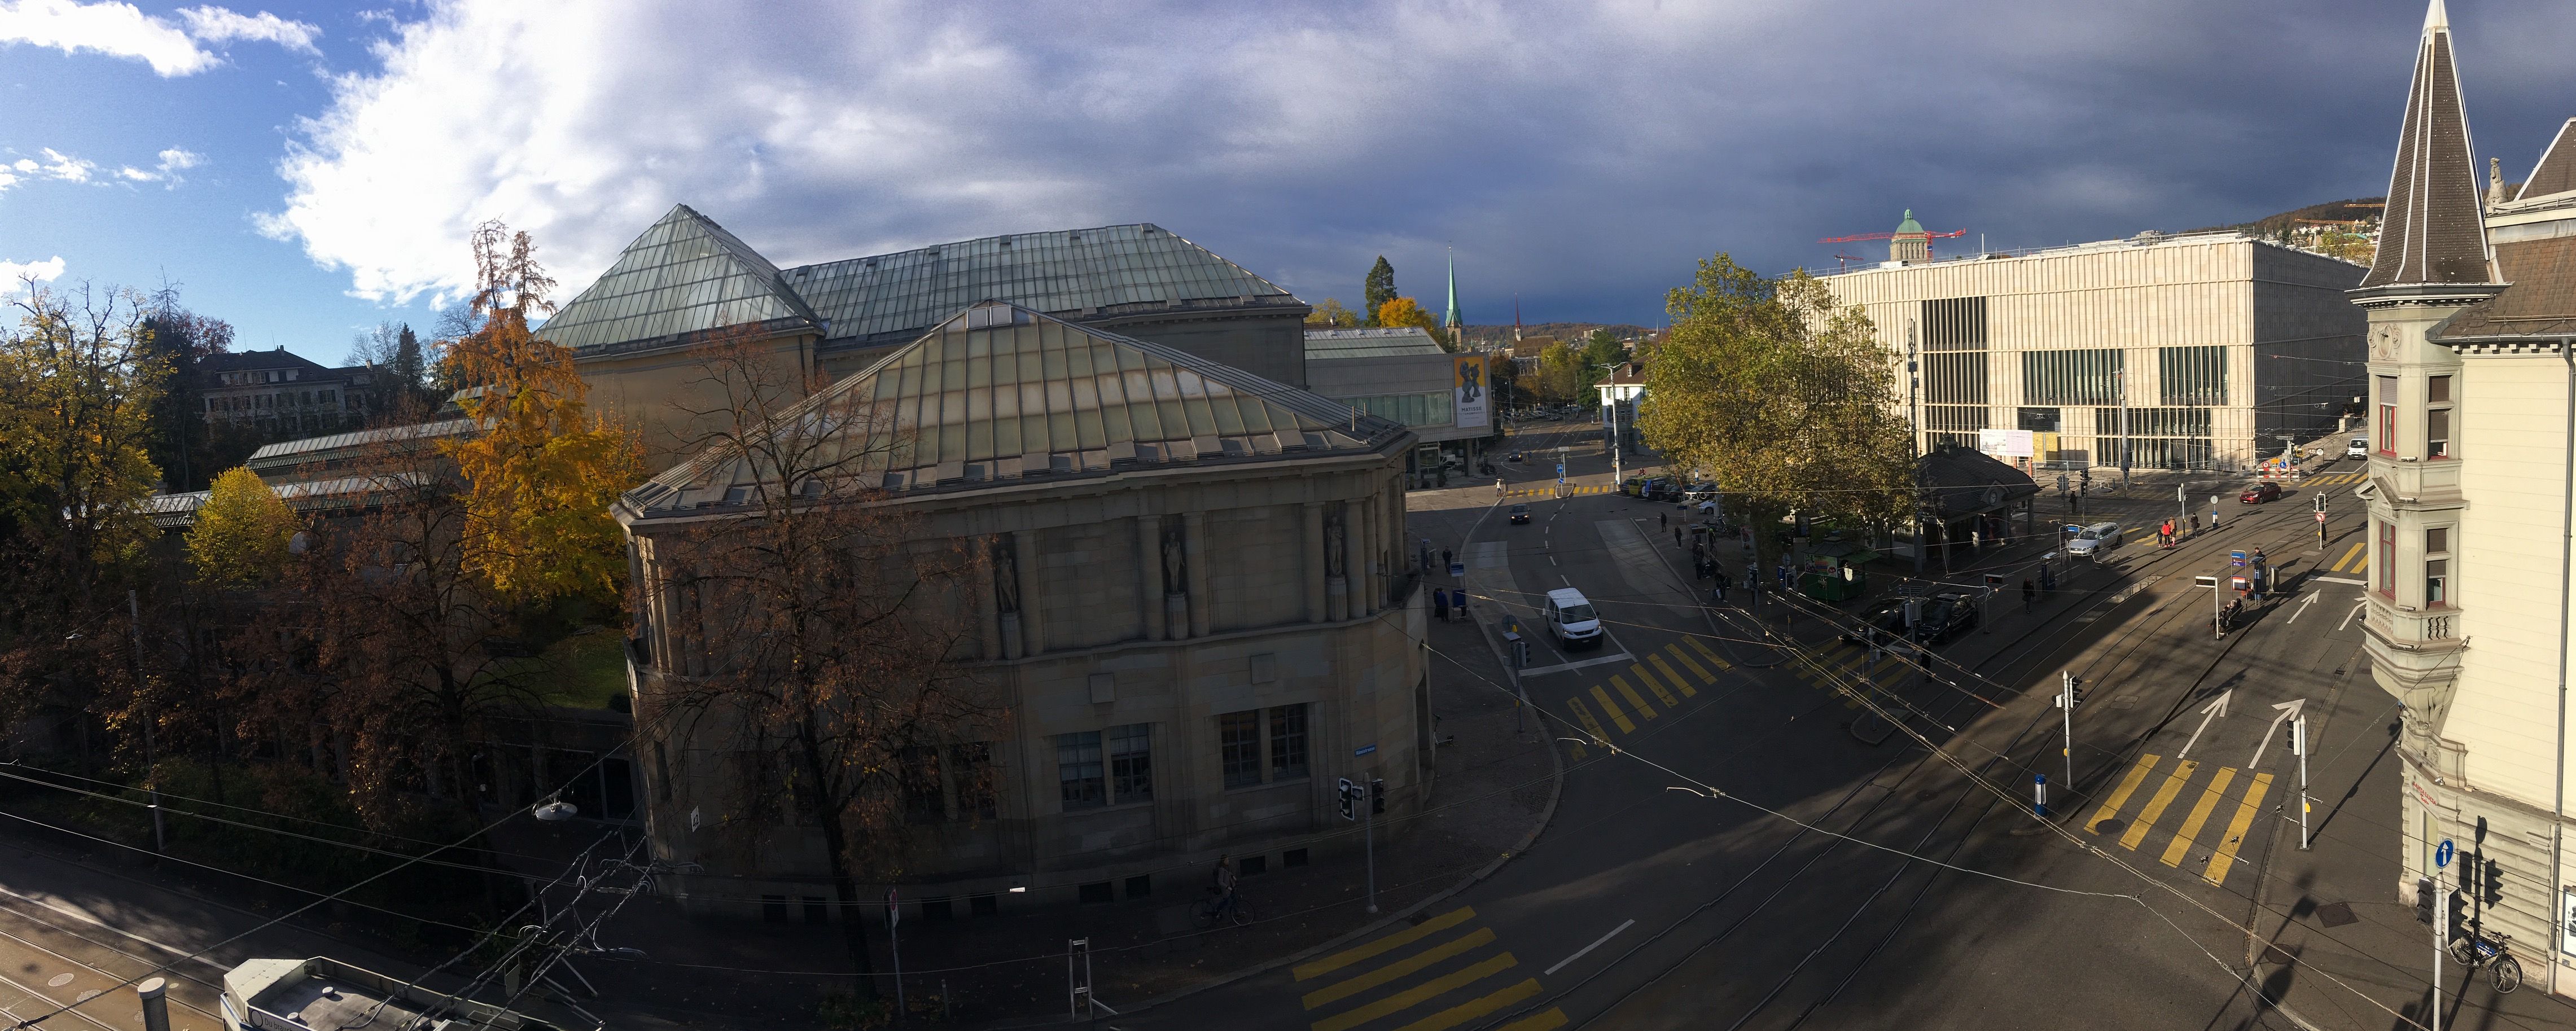 Aussicht aus dem Fenster der Matthias Wyssmann GmbH